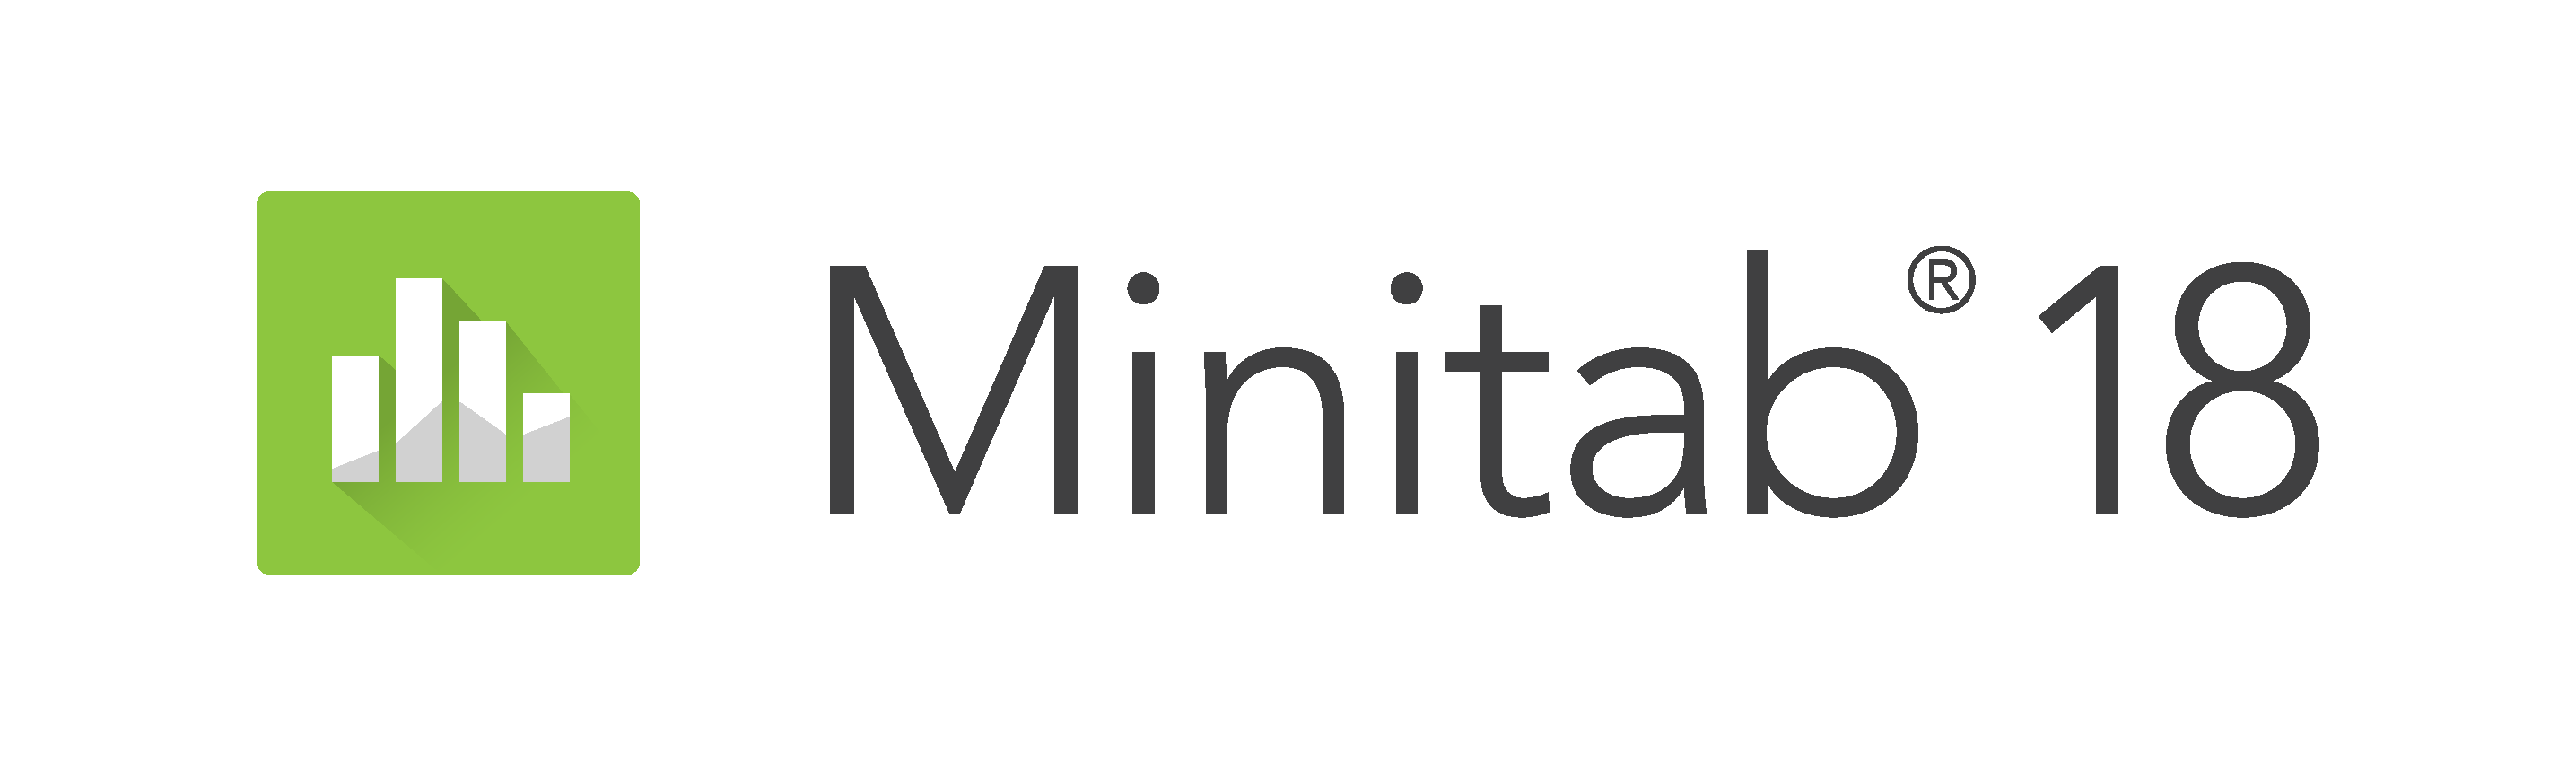 certificate for minitab